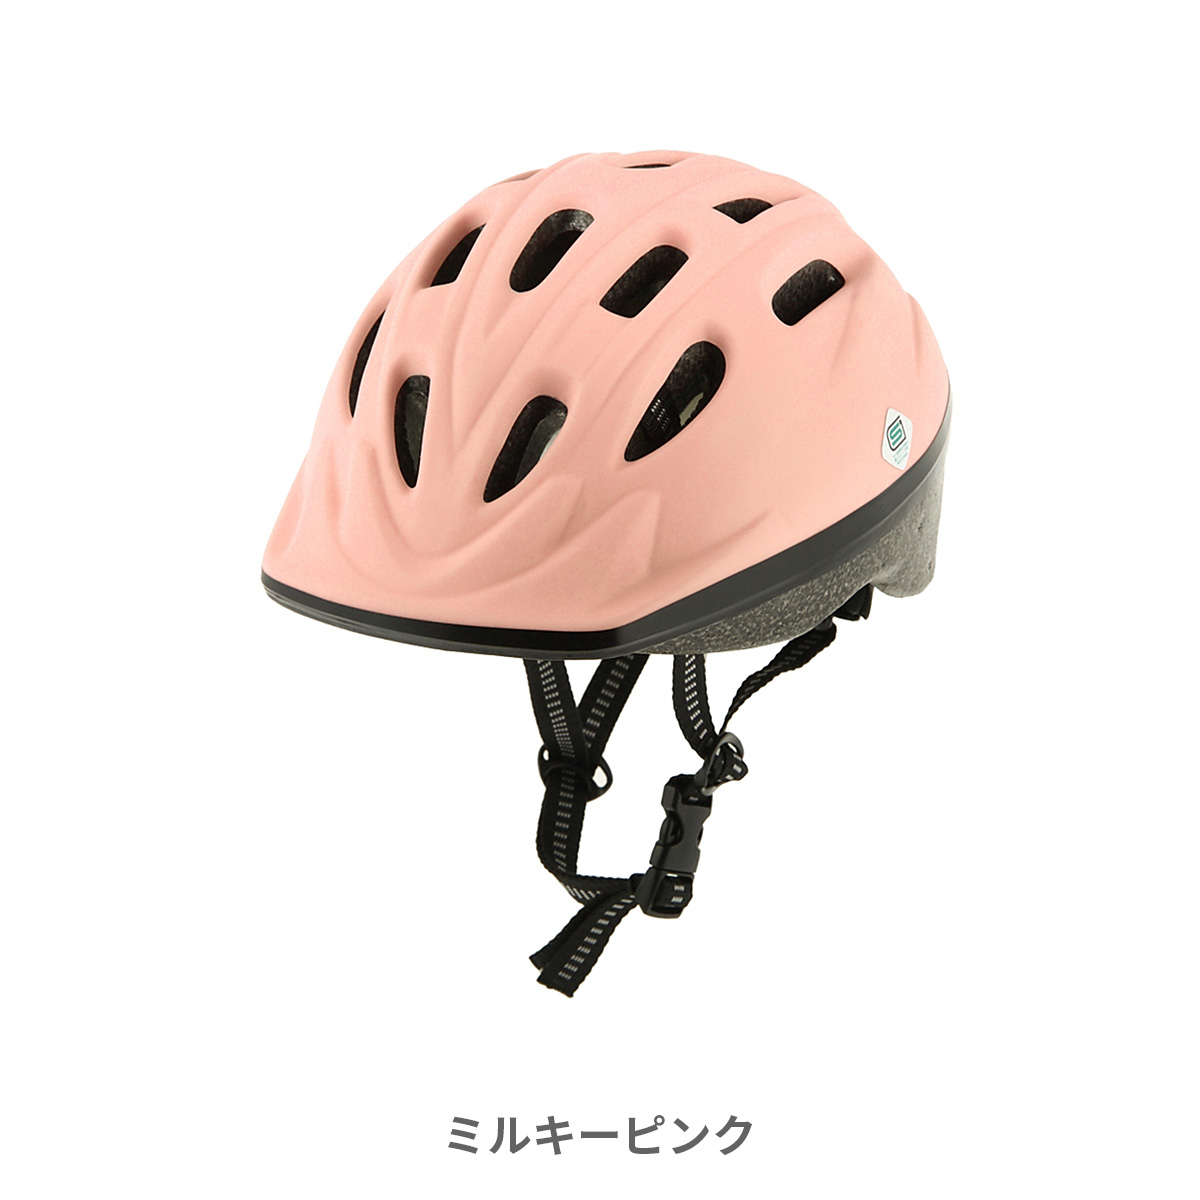 キッズヘルメット Sサイズ ヘルメット 子供用 自転車 48-52cm 210g Sg